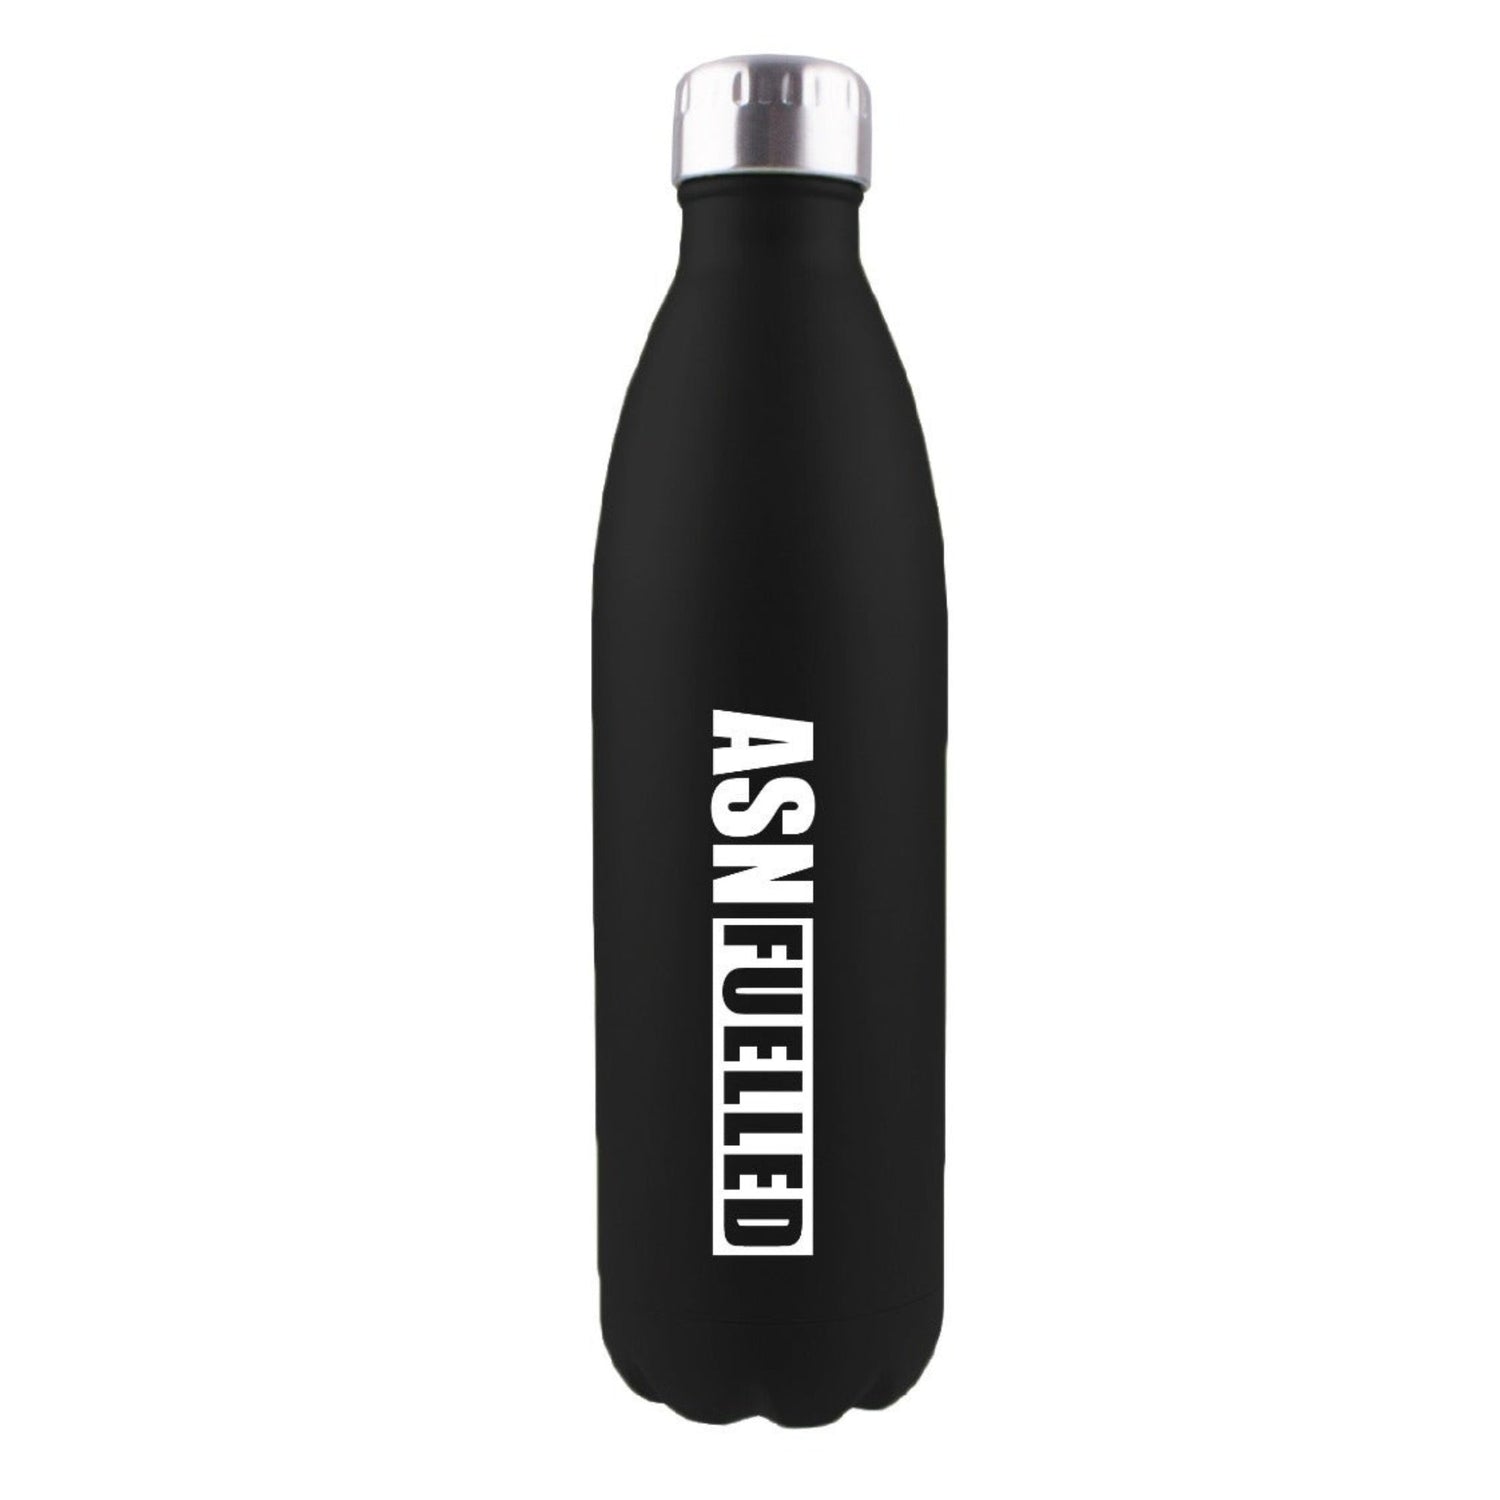 Australian Sports Nutrition Stainless Steel Bottle